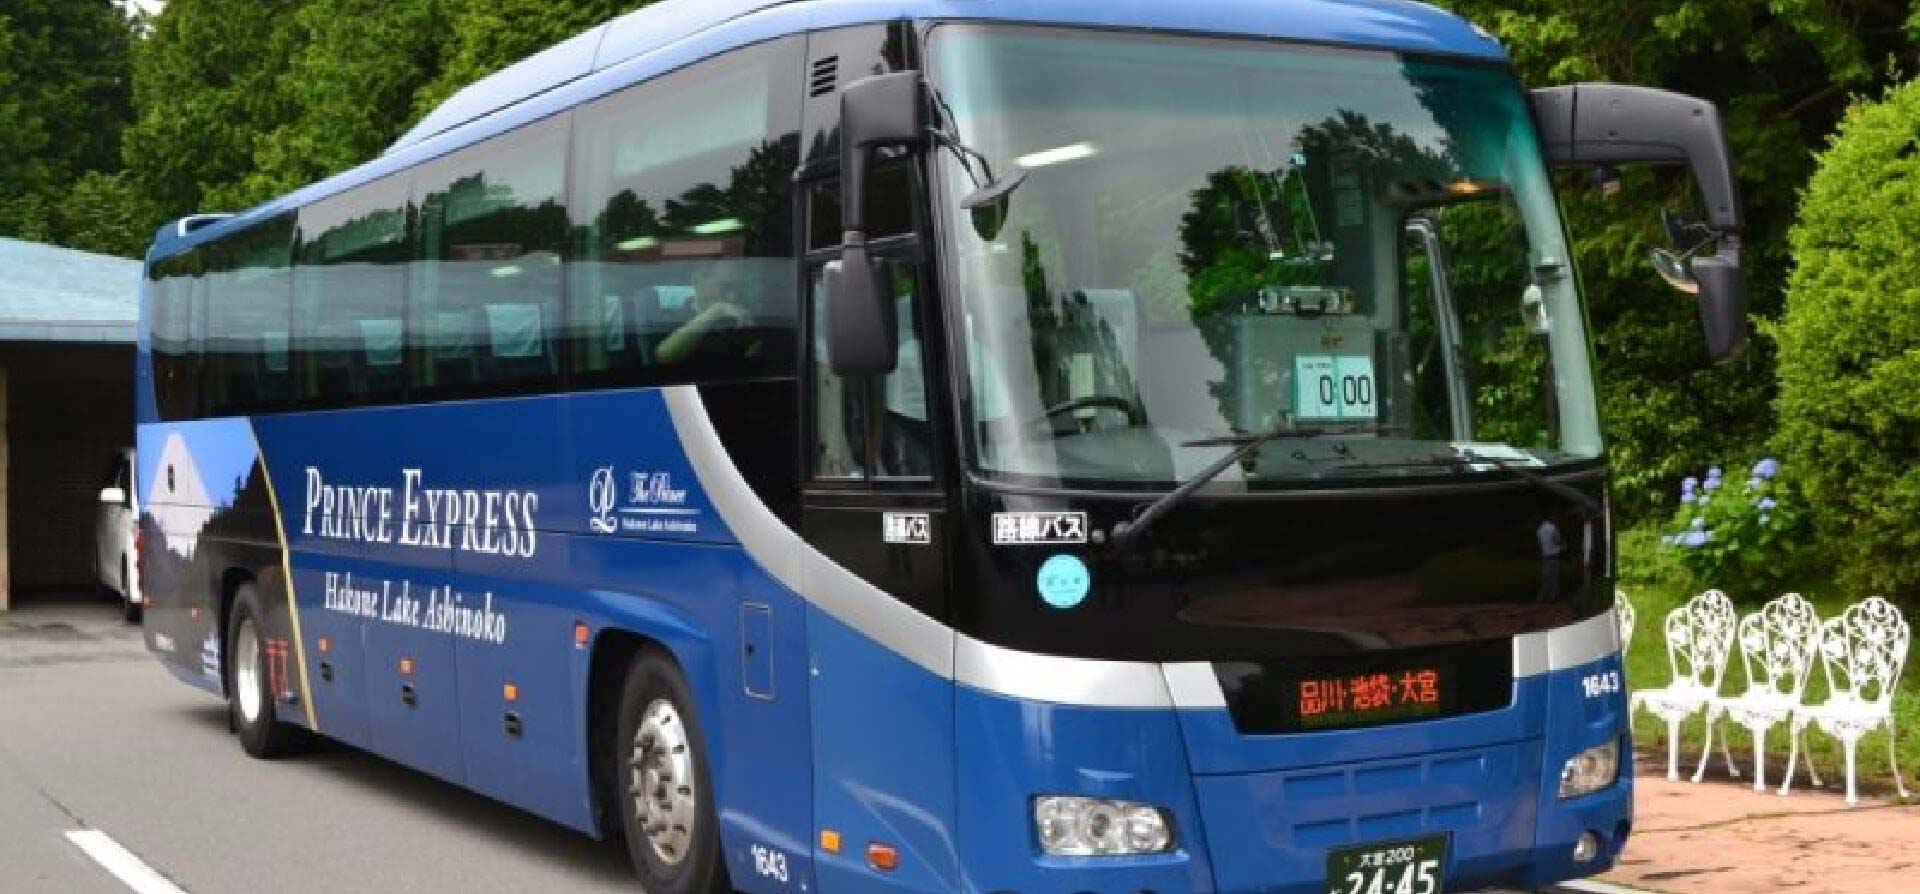 “東京-箱根高速巴士單程1,000日元”！SEIBU PRINCE CLUB emi會員限定價格